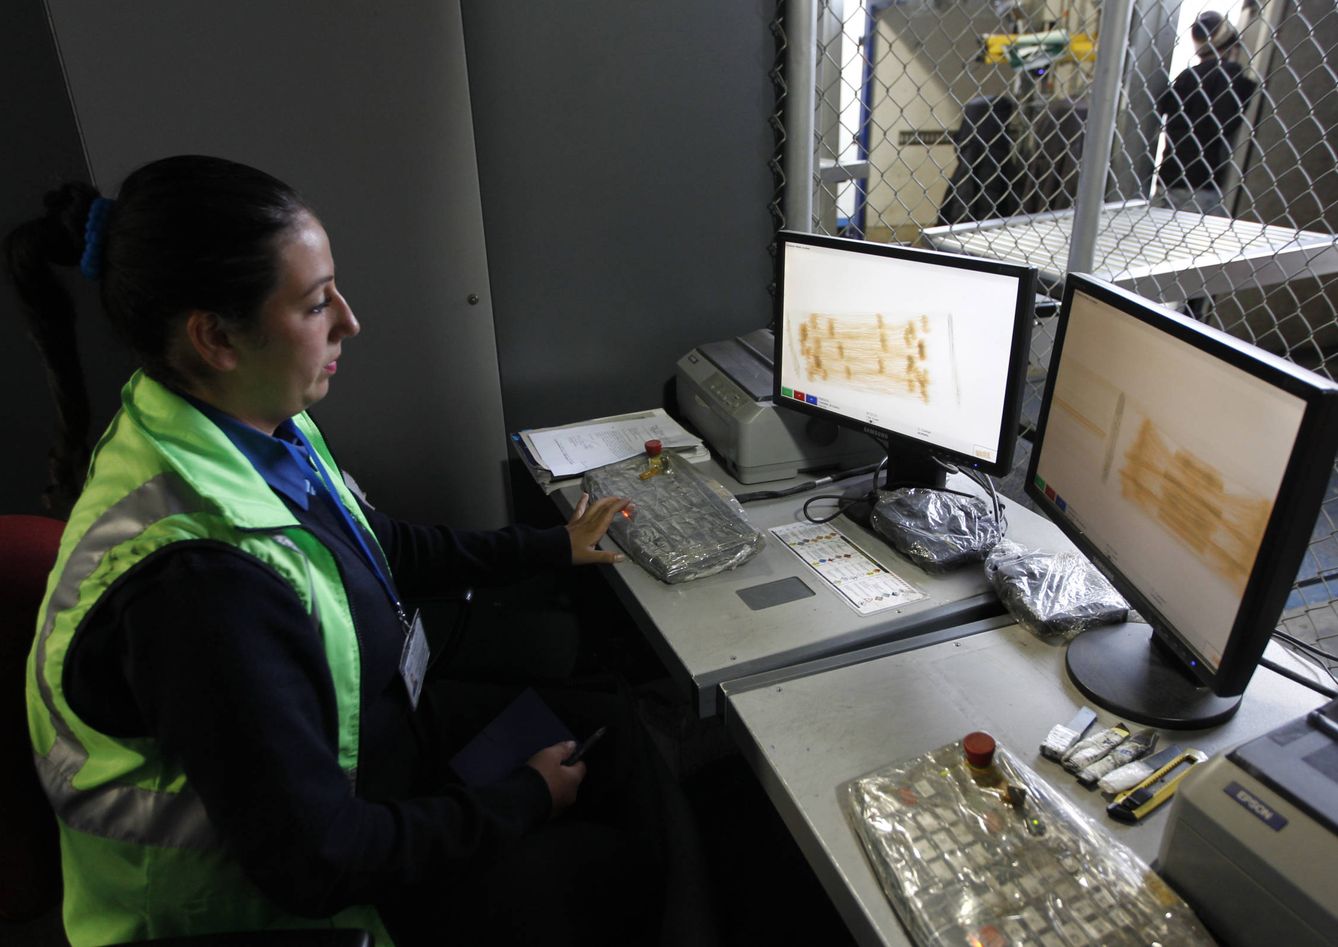 Una empleada de aduanas inspecciona cajas en un aparato de rayos X en el aeropuerto de El Dorado de Bogotá (Reuters)